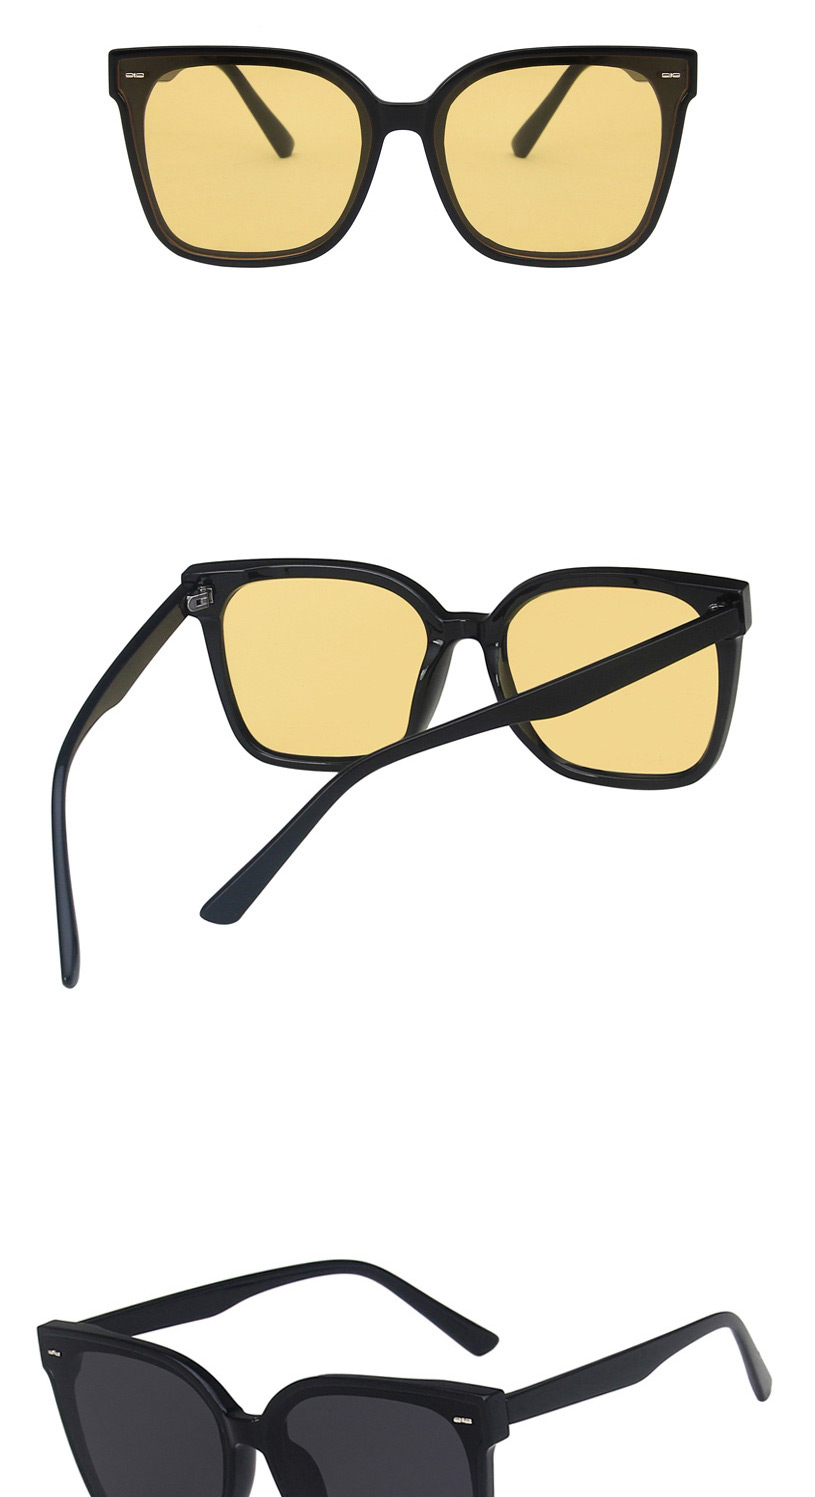 Fashion Bright Black All Gray Square Rice Nail Sunglasses,Women Sunglasses